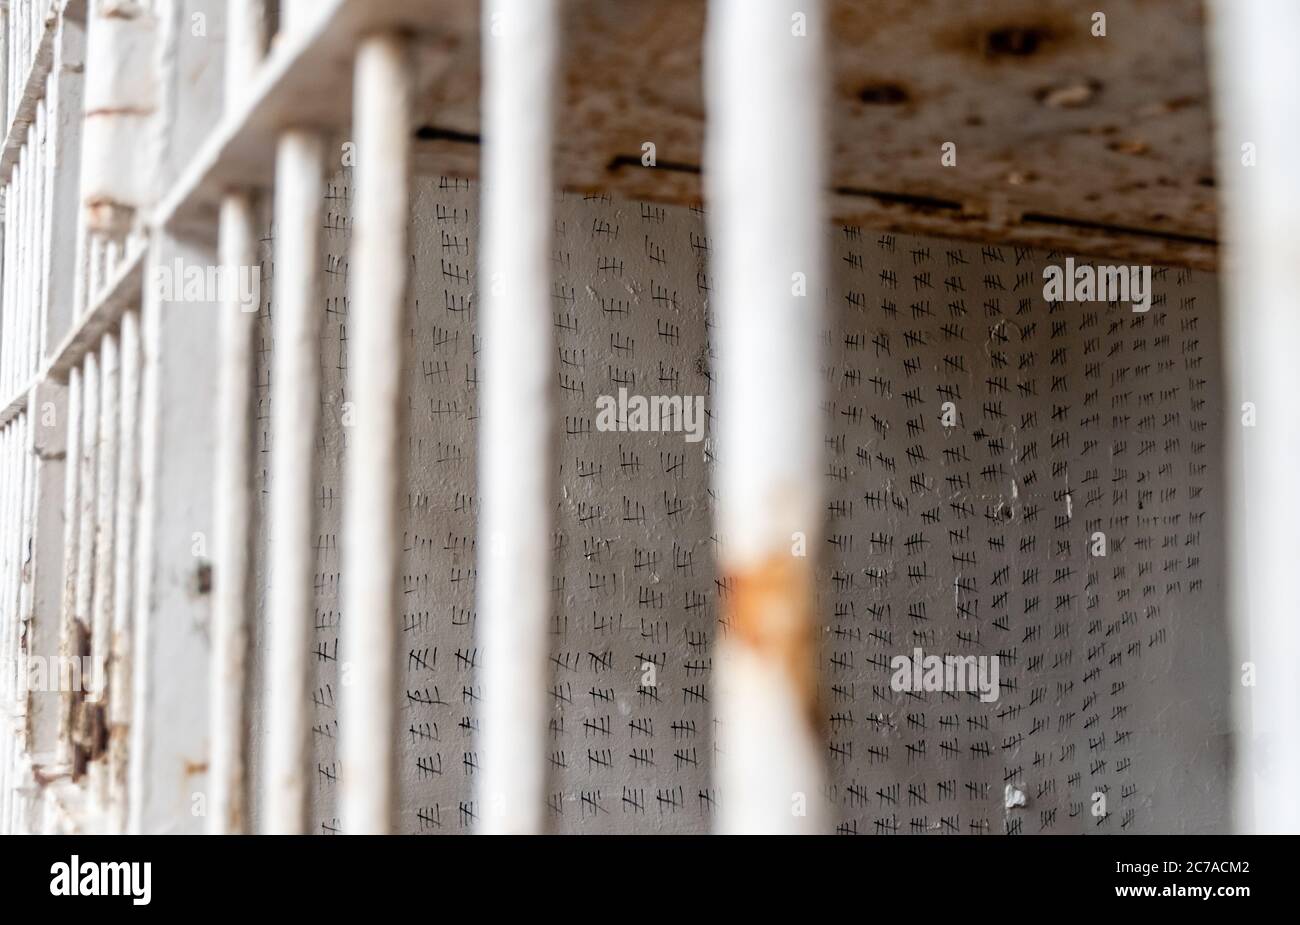 Brushy cadena de la prisión estatal de montaña marcas de hash / huelgas en la pared de la celda en la prisión de Tennessee Foto de stock